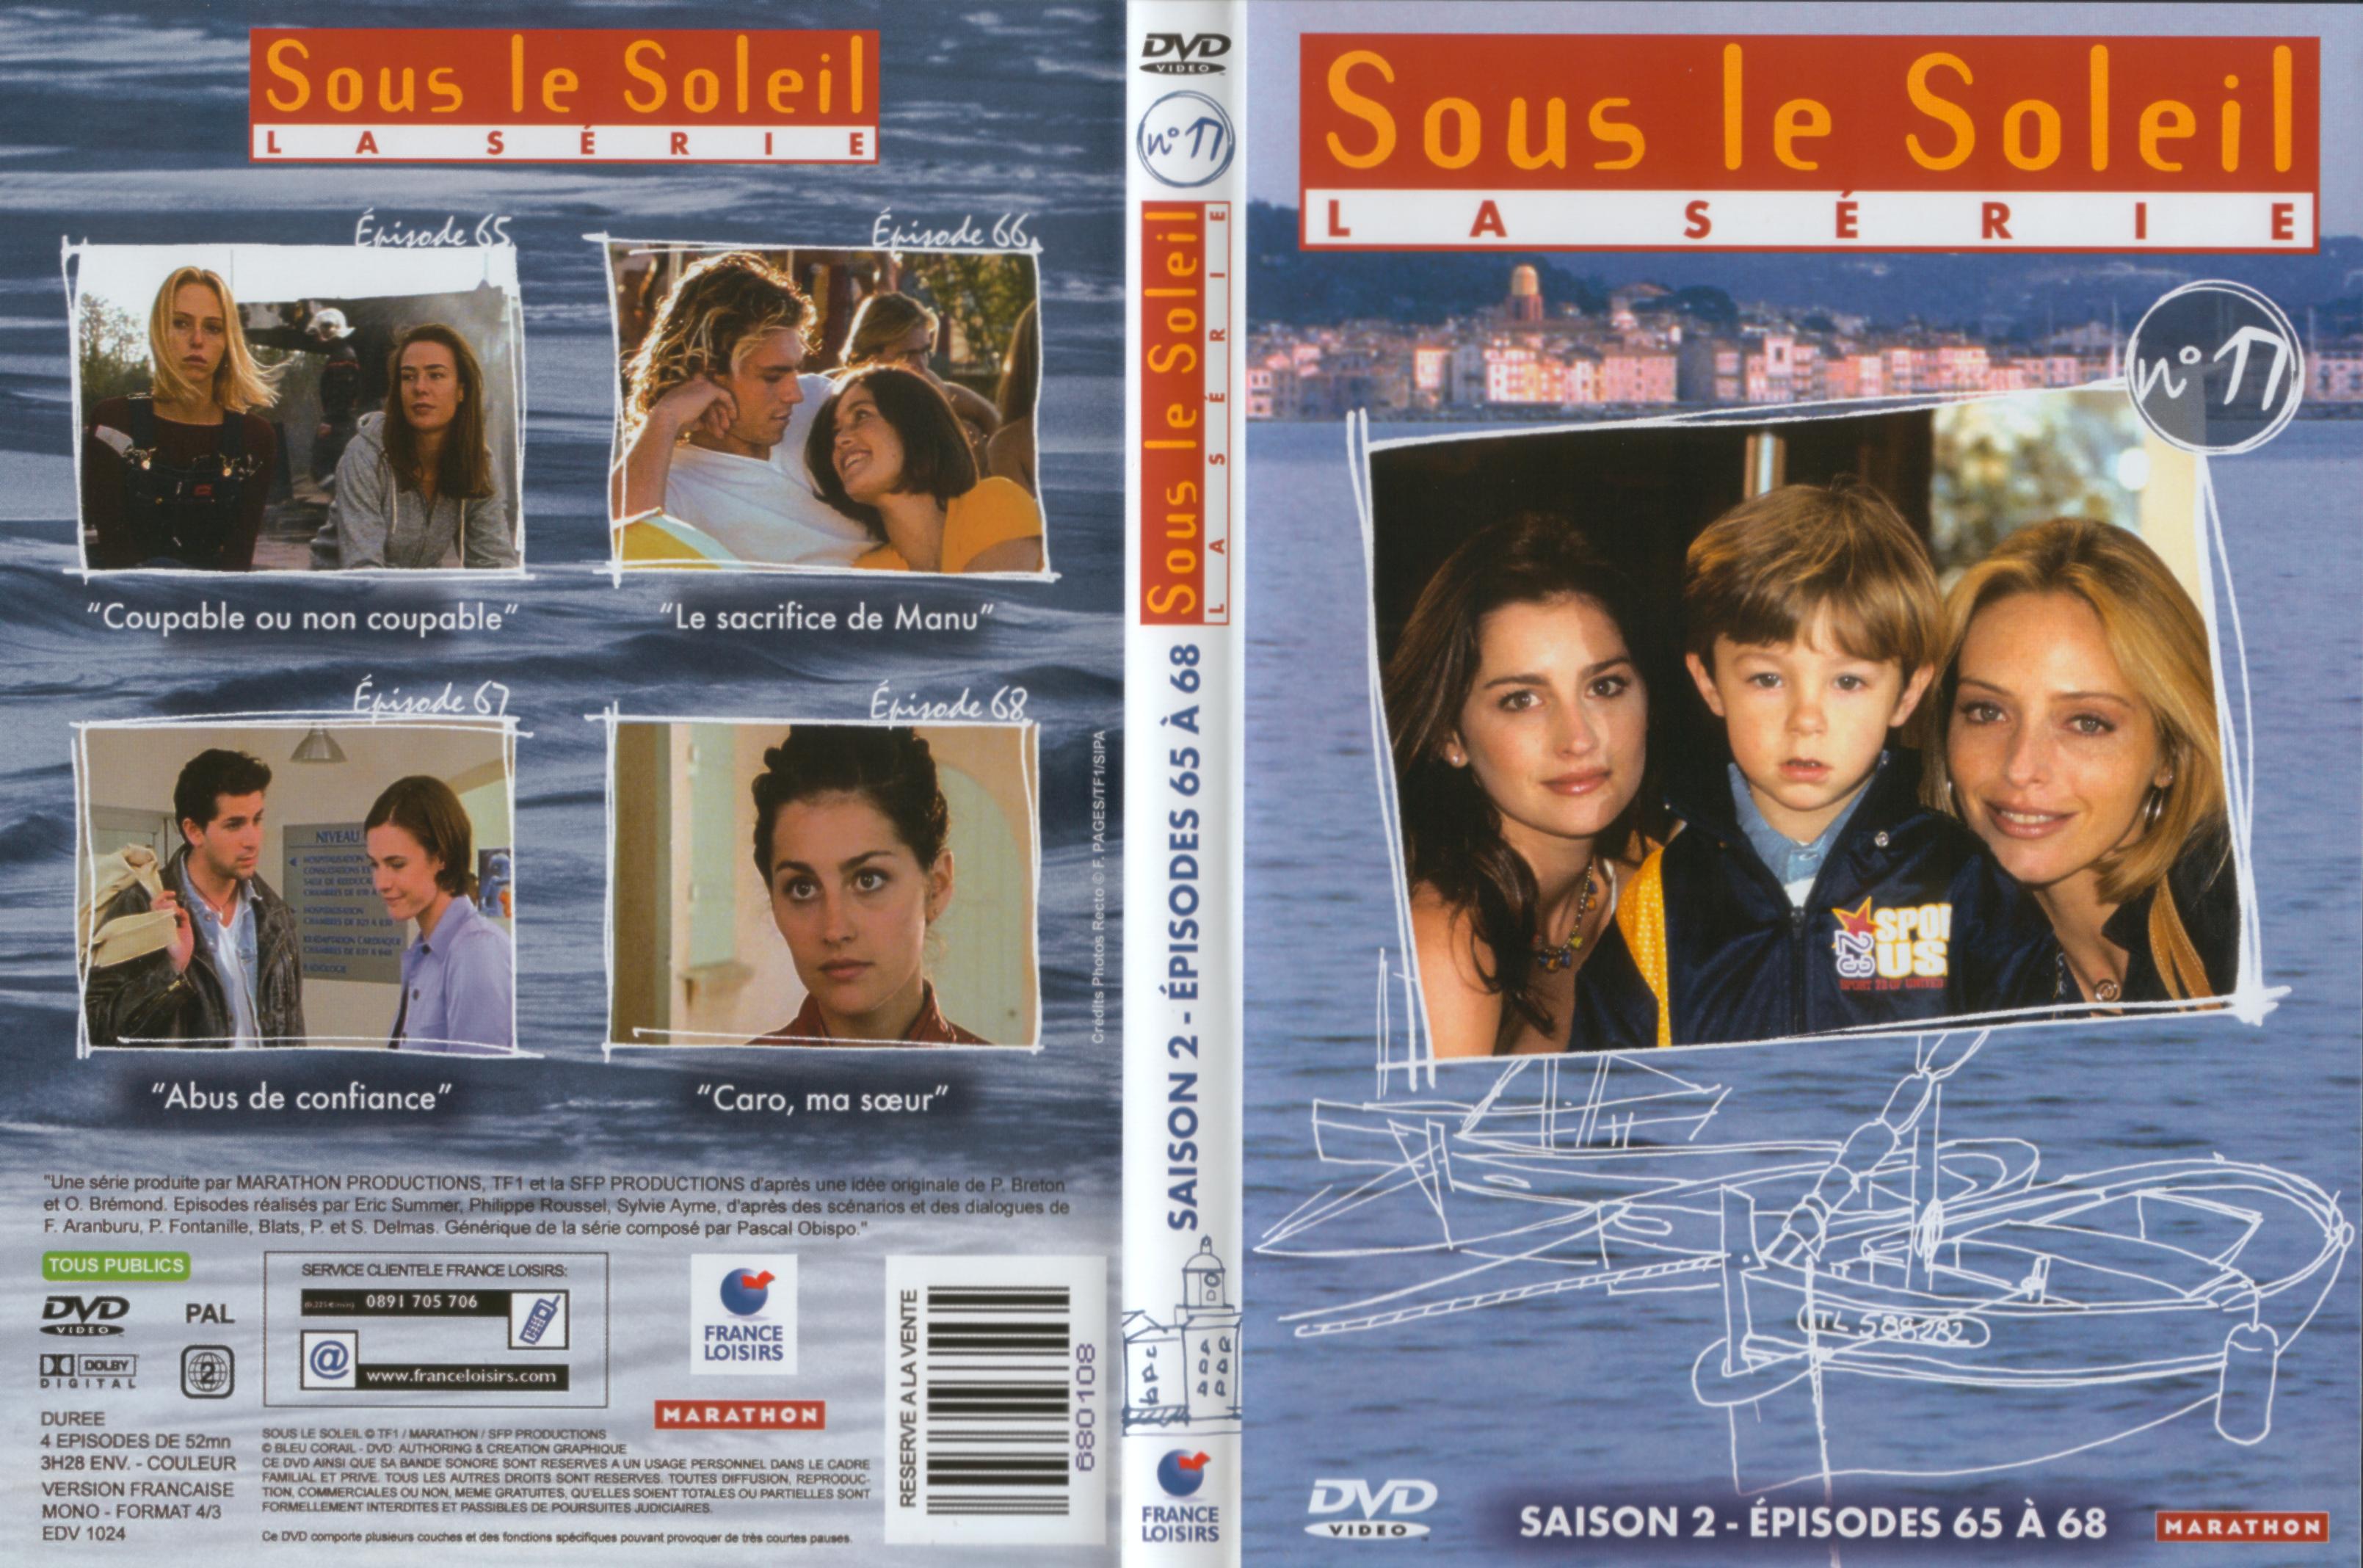 Jaquette DVD Sous le soleil saison 2 vol 17